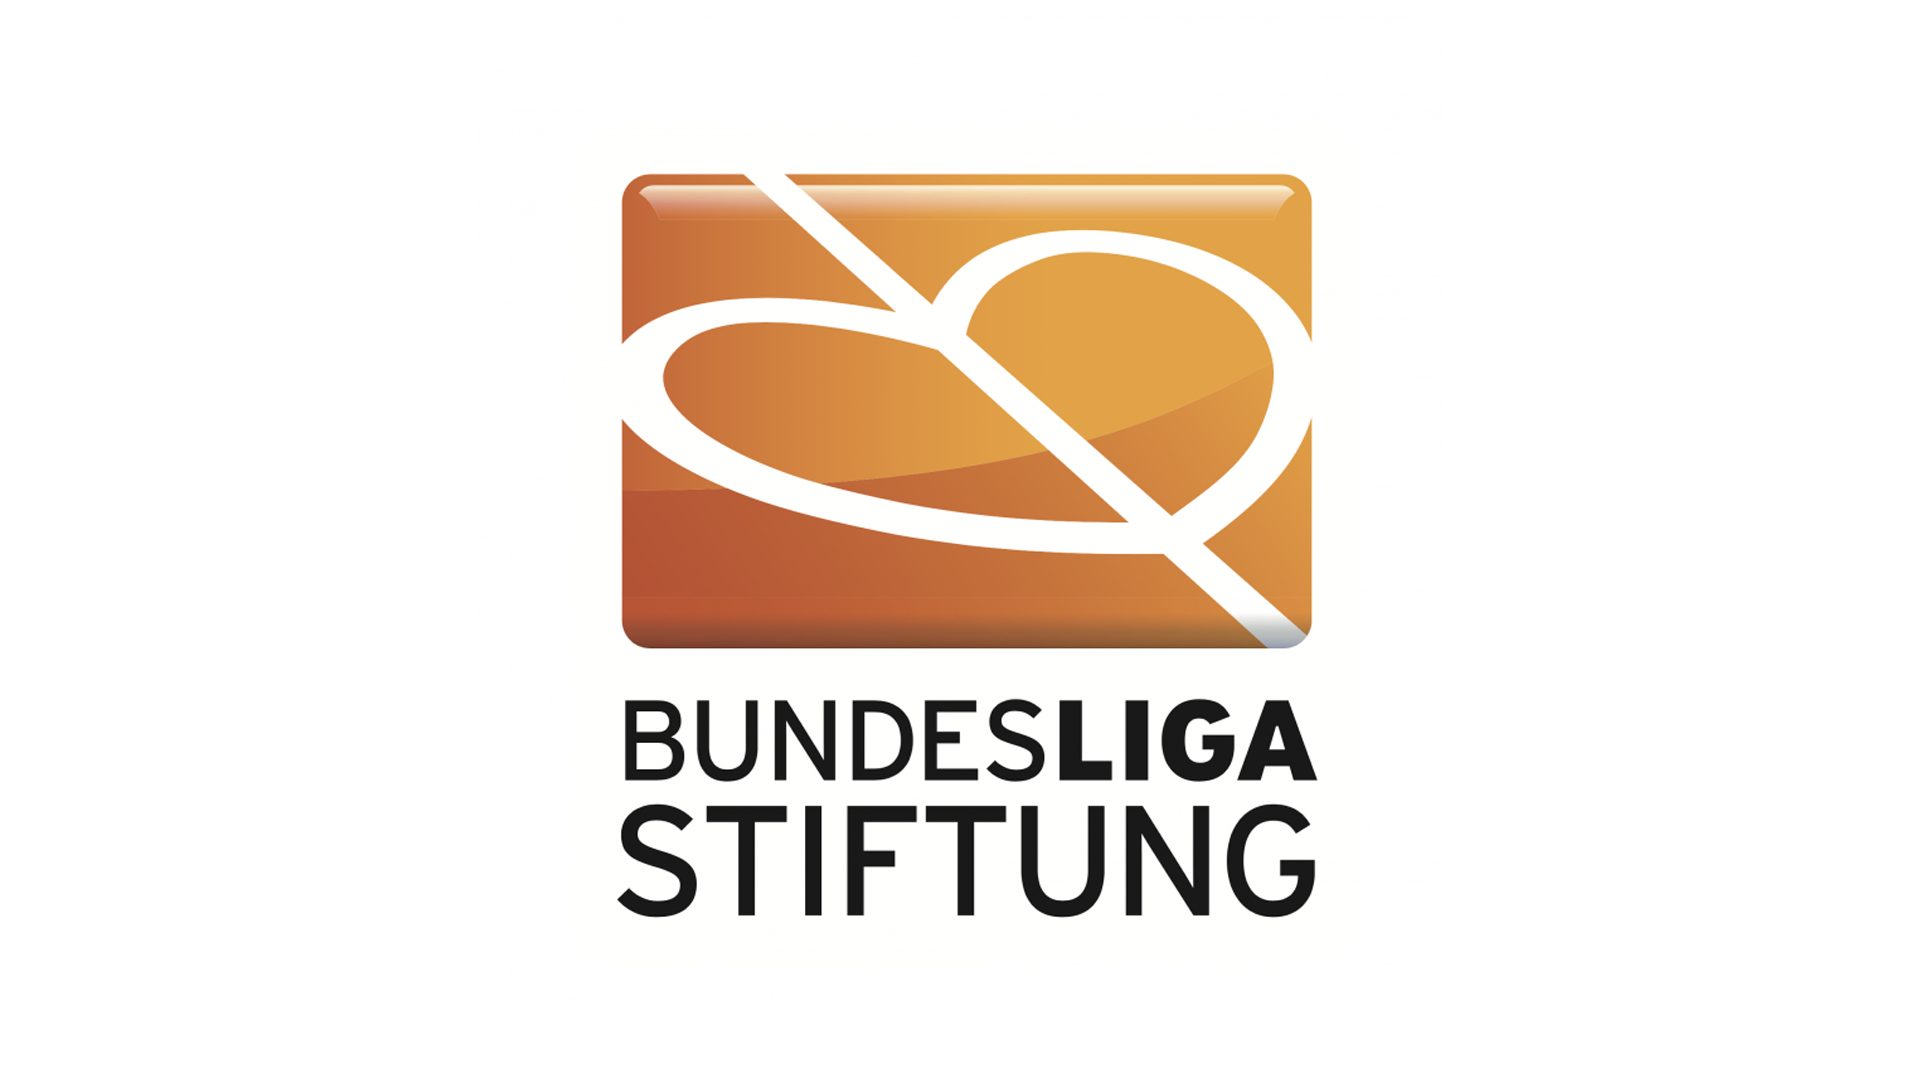 Wir begrüßen die Bundesliga Stiftung als Neukunden. Ein neues Corporate Design Projekt steht uns ins Haus und spannende Aufgaben in den Bereichen Stiftungsmarketing